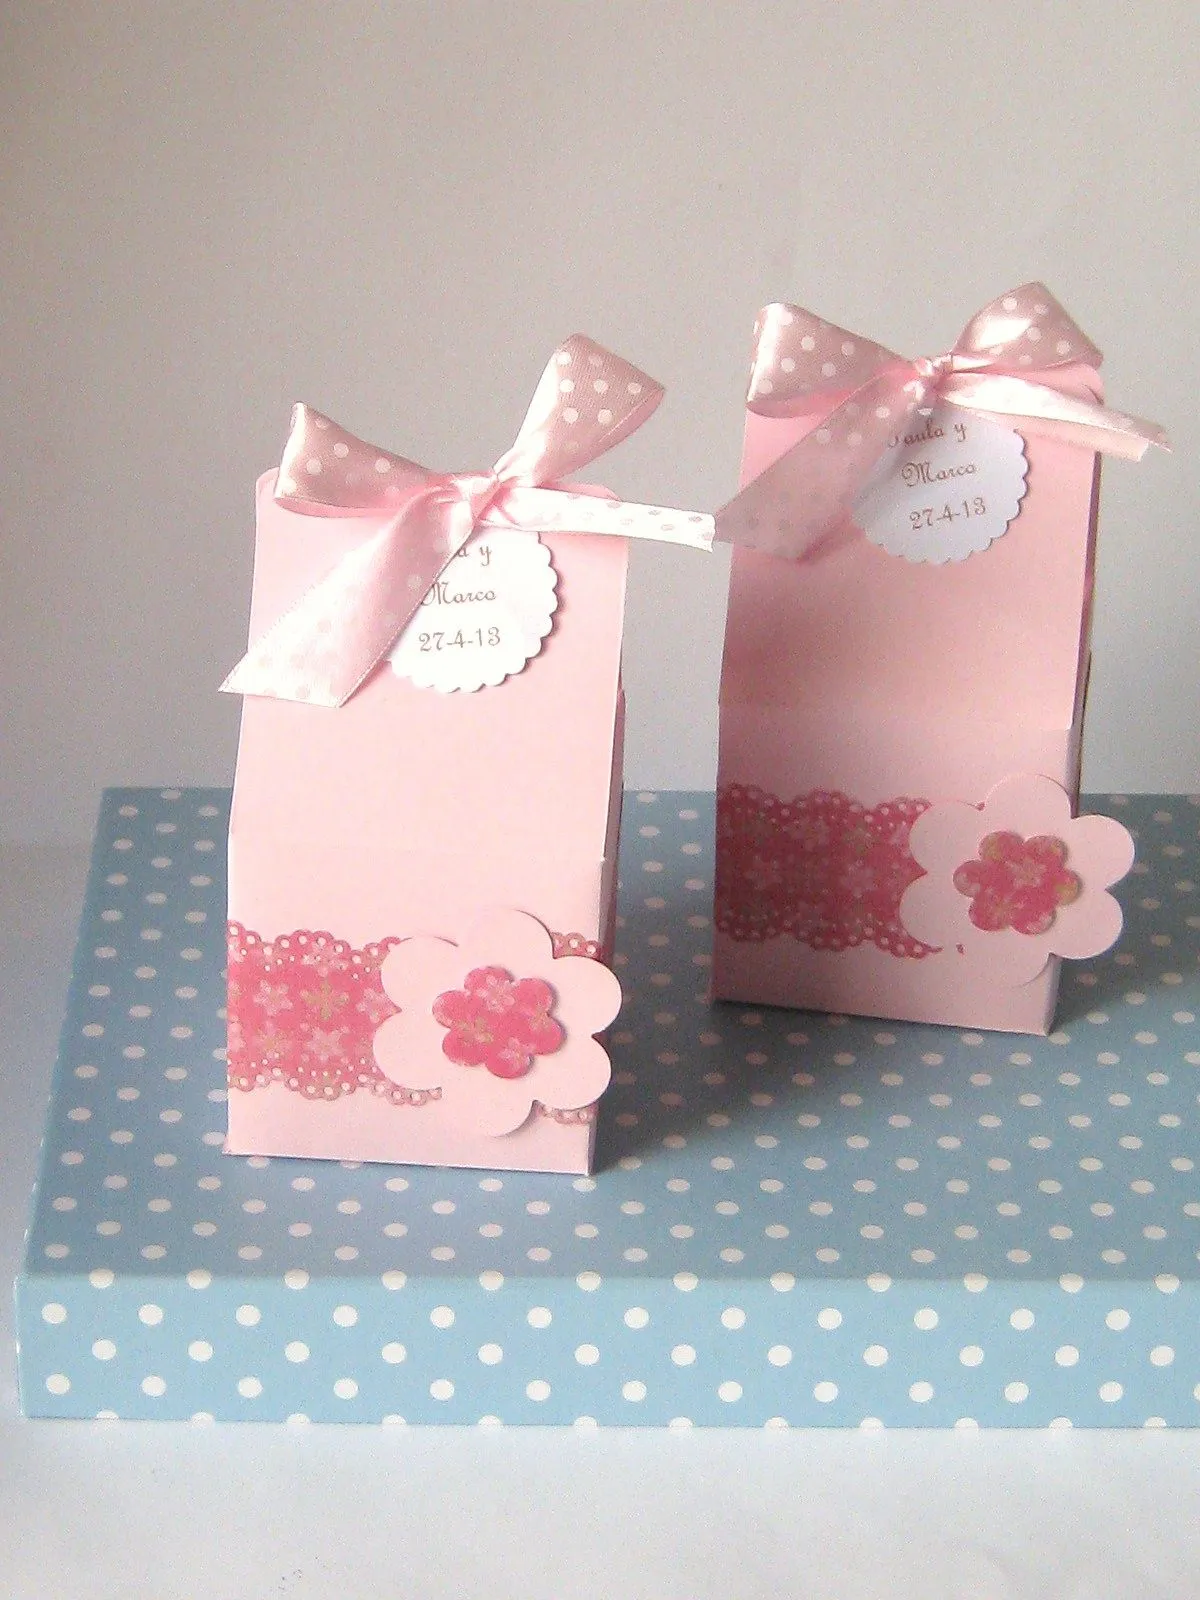 chocolate y burbujas: Detalles para eventos, cajas de jabones rosas.